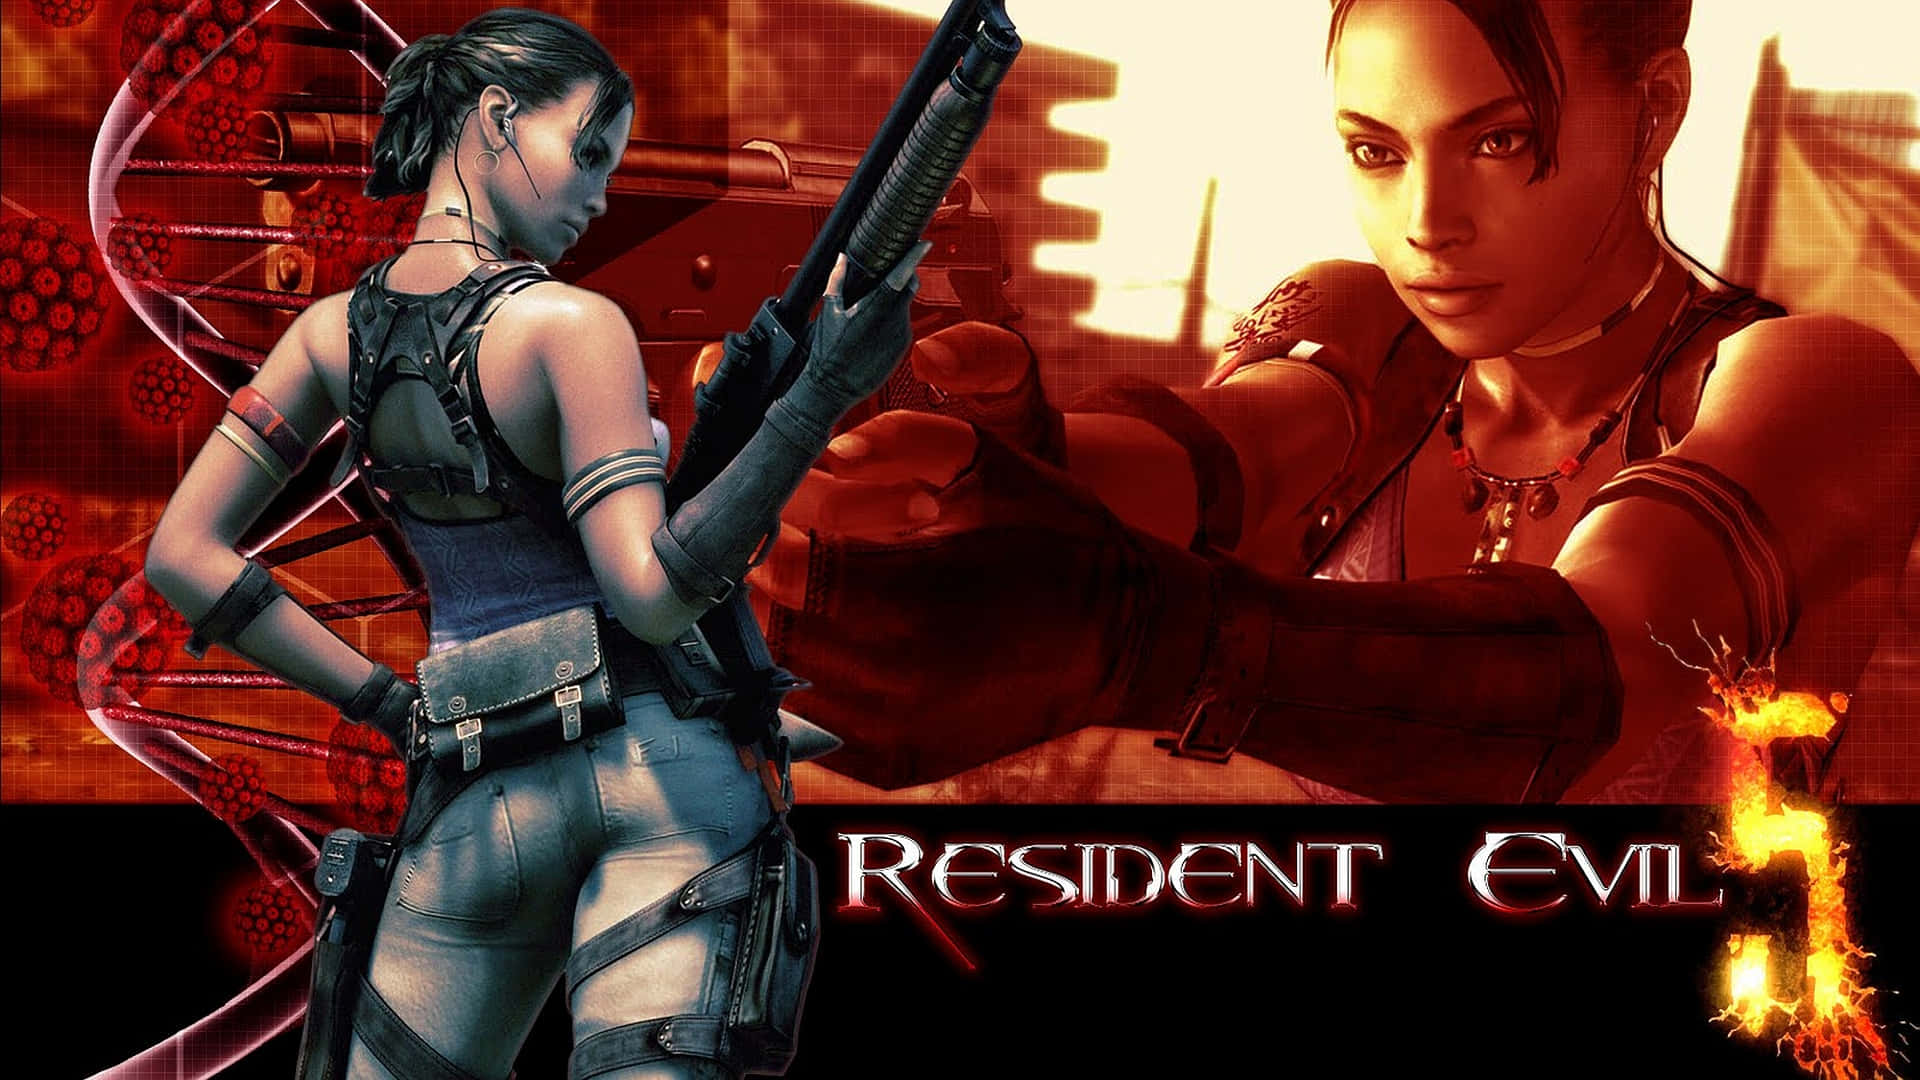 Chris Redfield And Sheva Alomar In Action - Resident Evil 5 Wallpaper